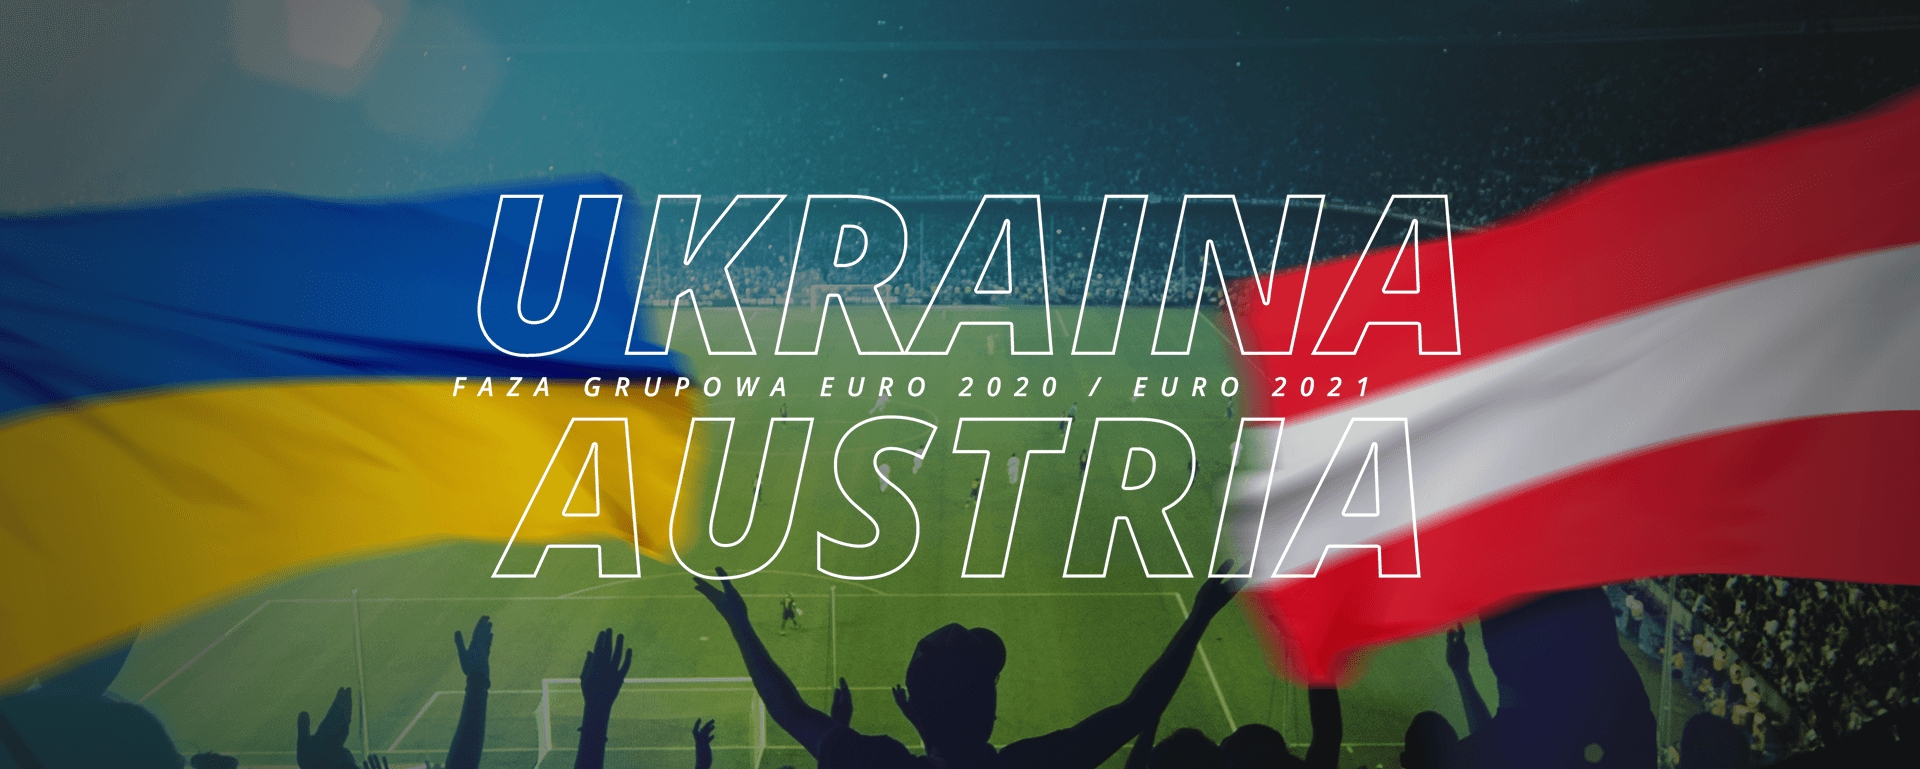 Ukraina – Austria | faza grupowa Euro 2020 / Euro 2021